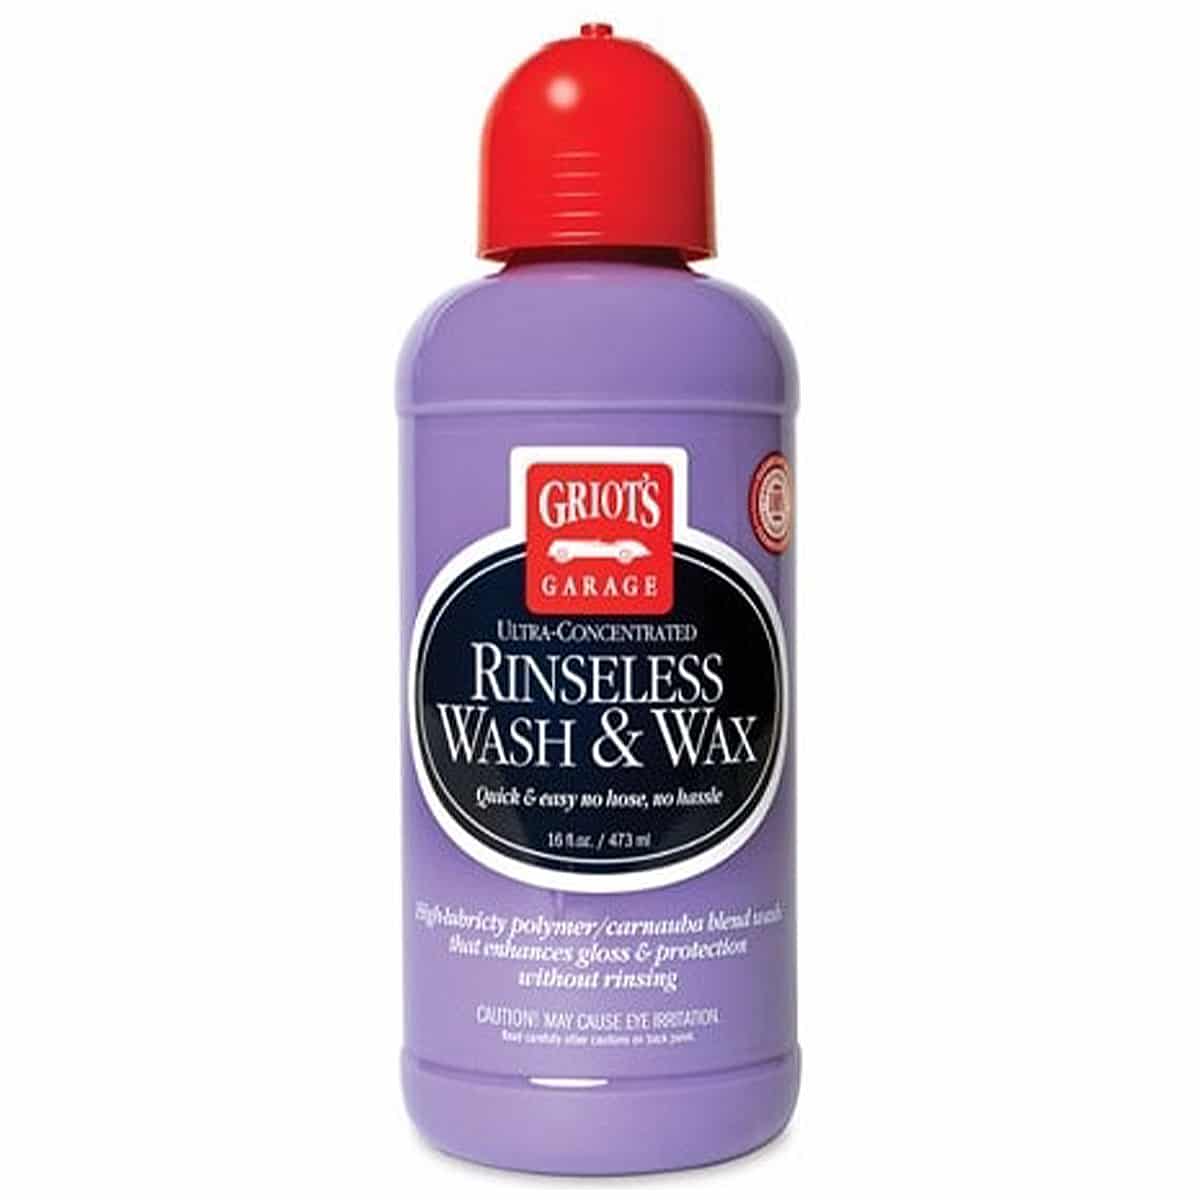 Griots Rinseless Wash & Wax 16 fl oz – 473ml